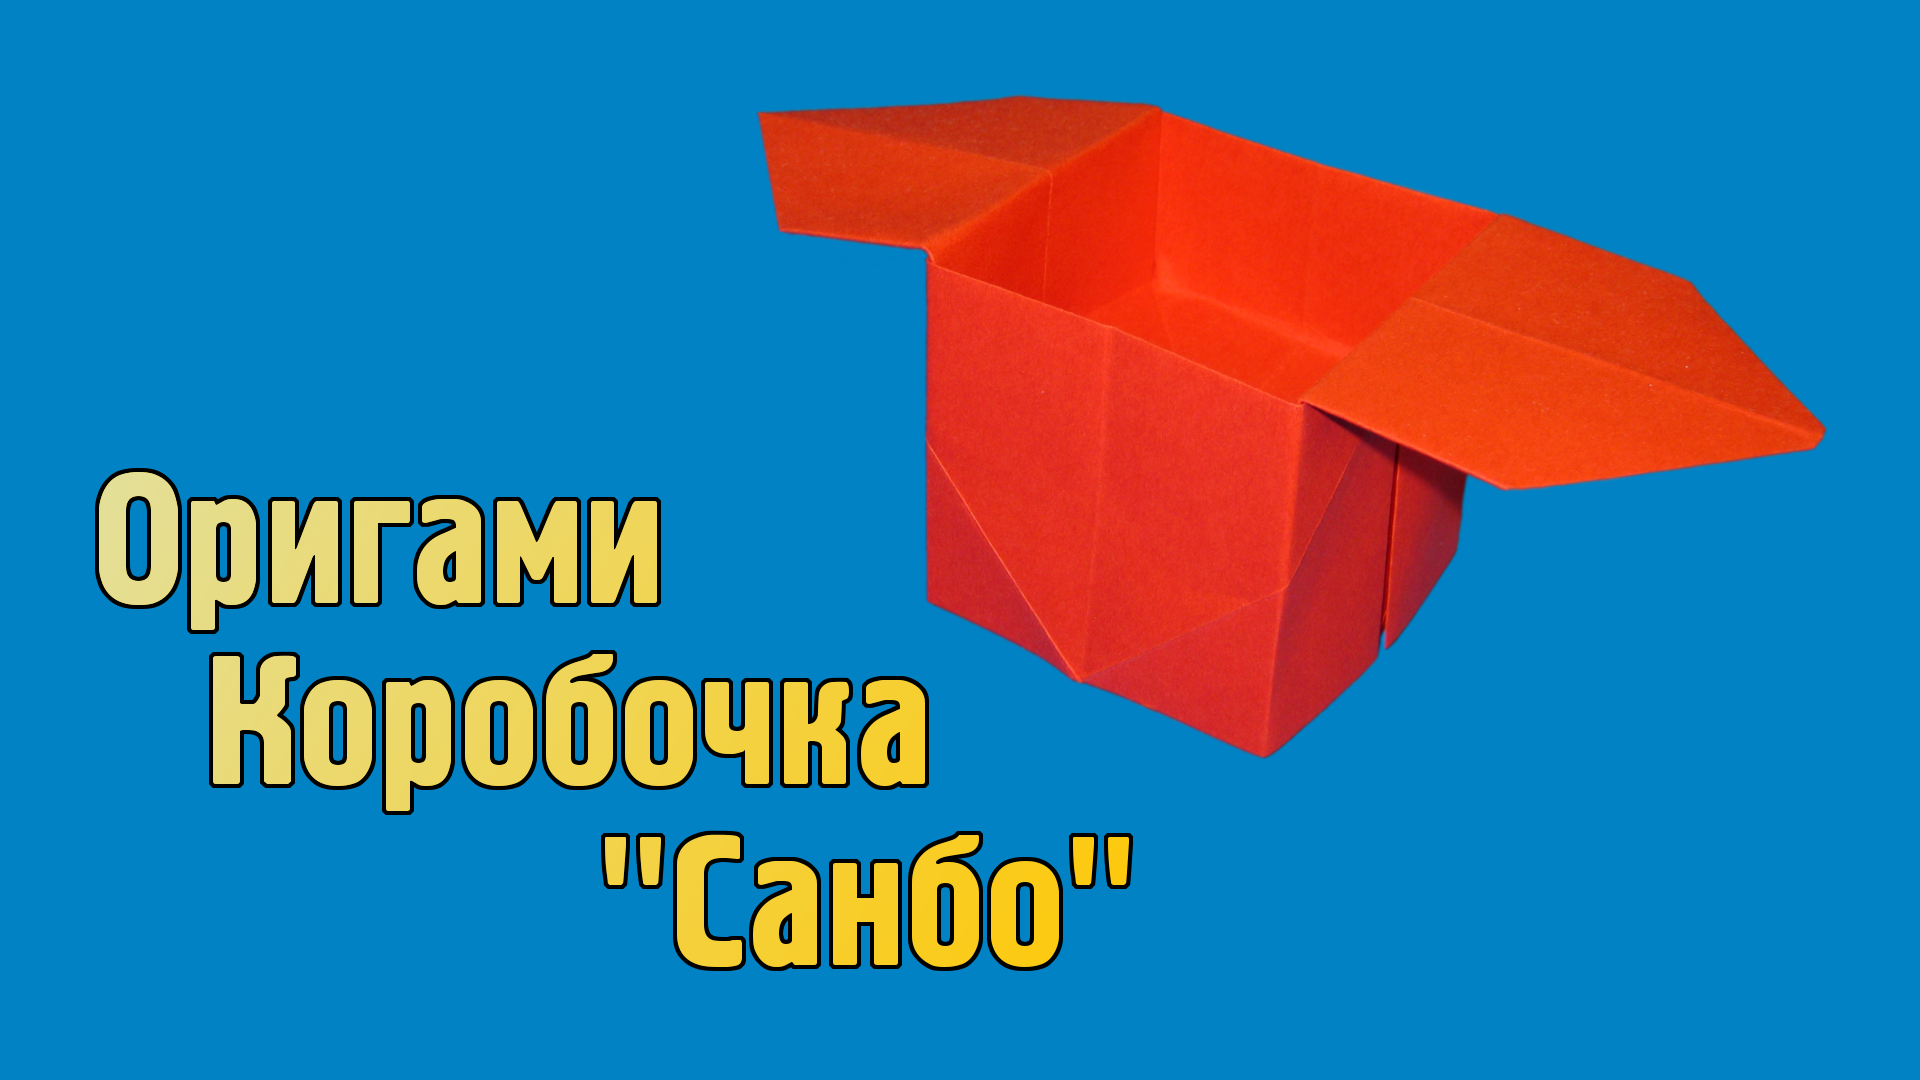 Как сделать Коробочку из бумаги своими руками | Оригами Коробочка Санбо для детей без клея